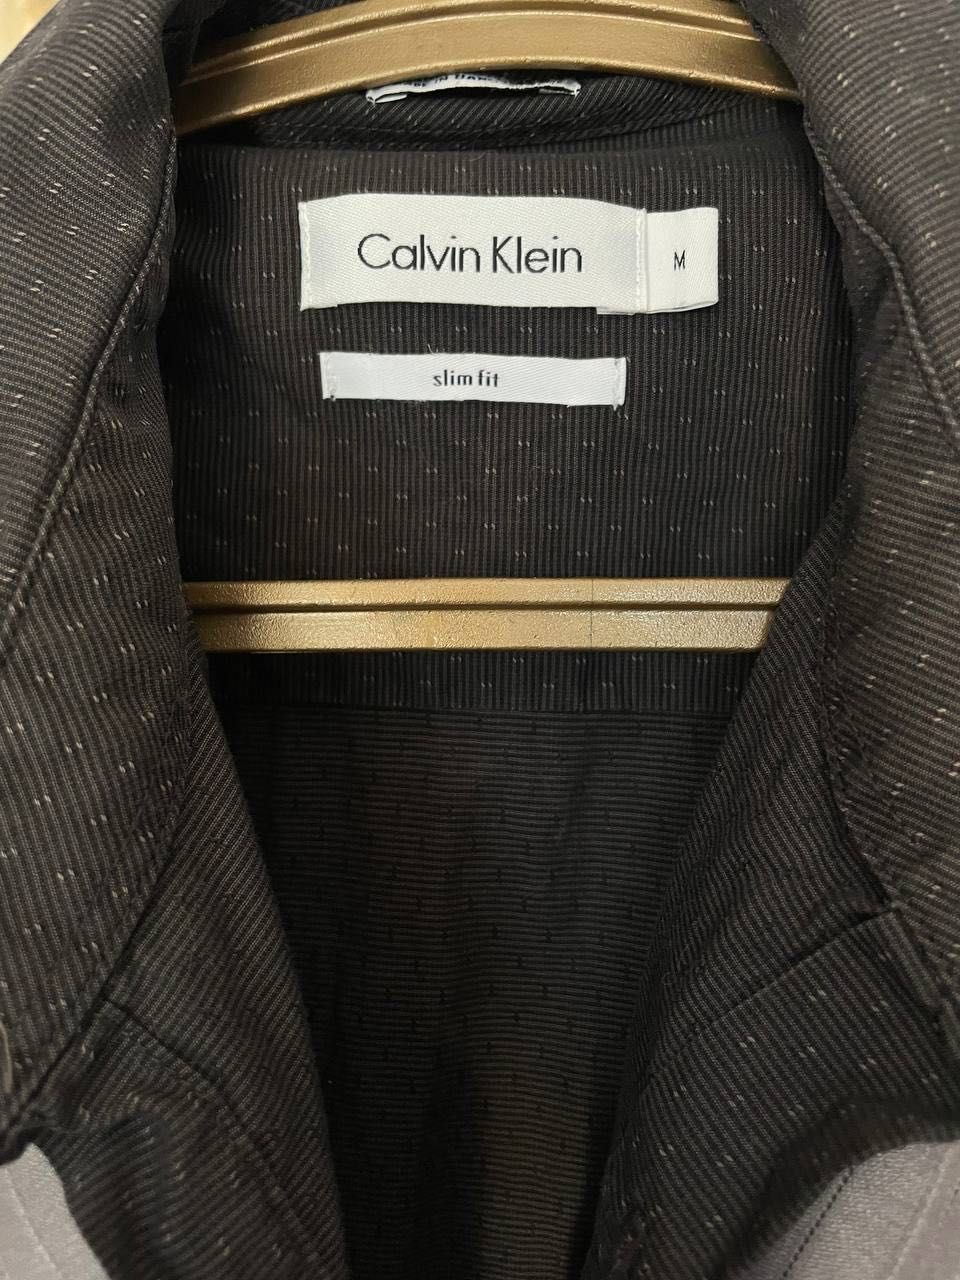 Костюм мужской светло-серый + Рубашка Calvin Klein в подарок